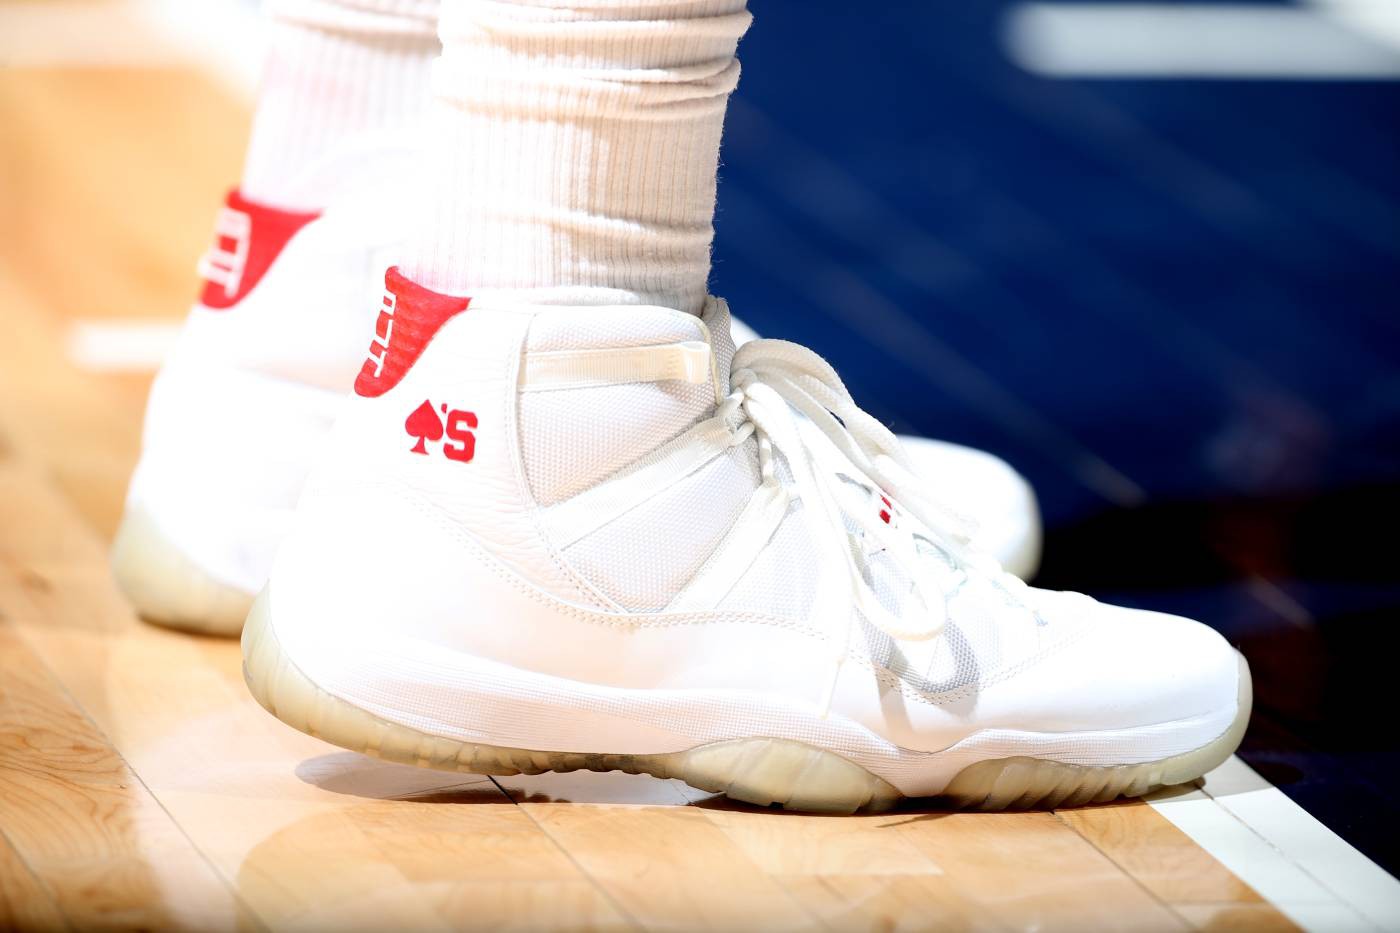 Chi tiết và đầy đủ các mẫu giày khủng của Thánh giày P.J. Tucker tại NBA Playoffs 2018 (kỳ 1) - Ảnh 7.